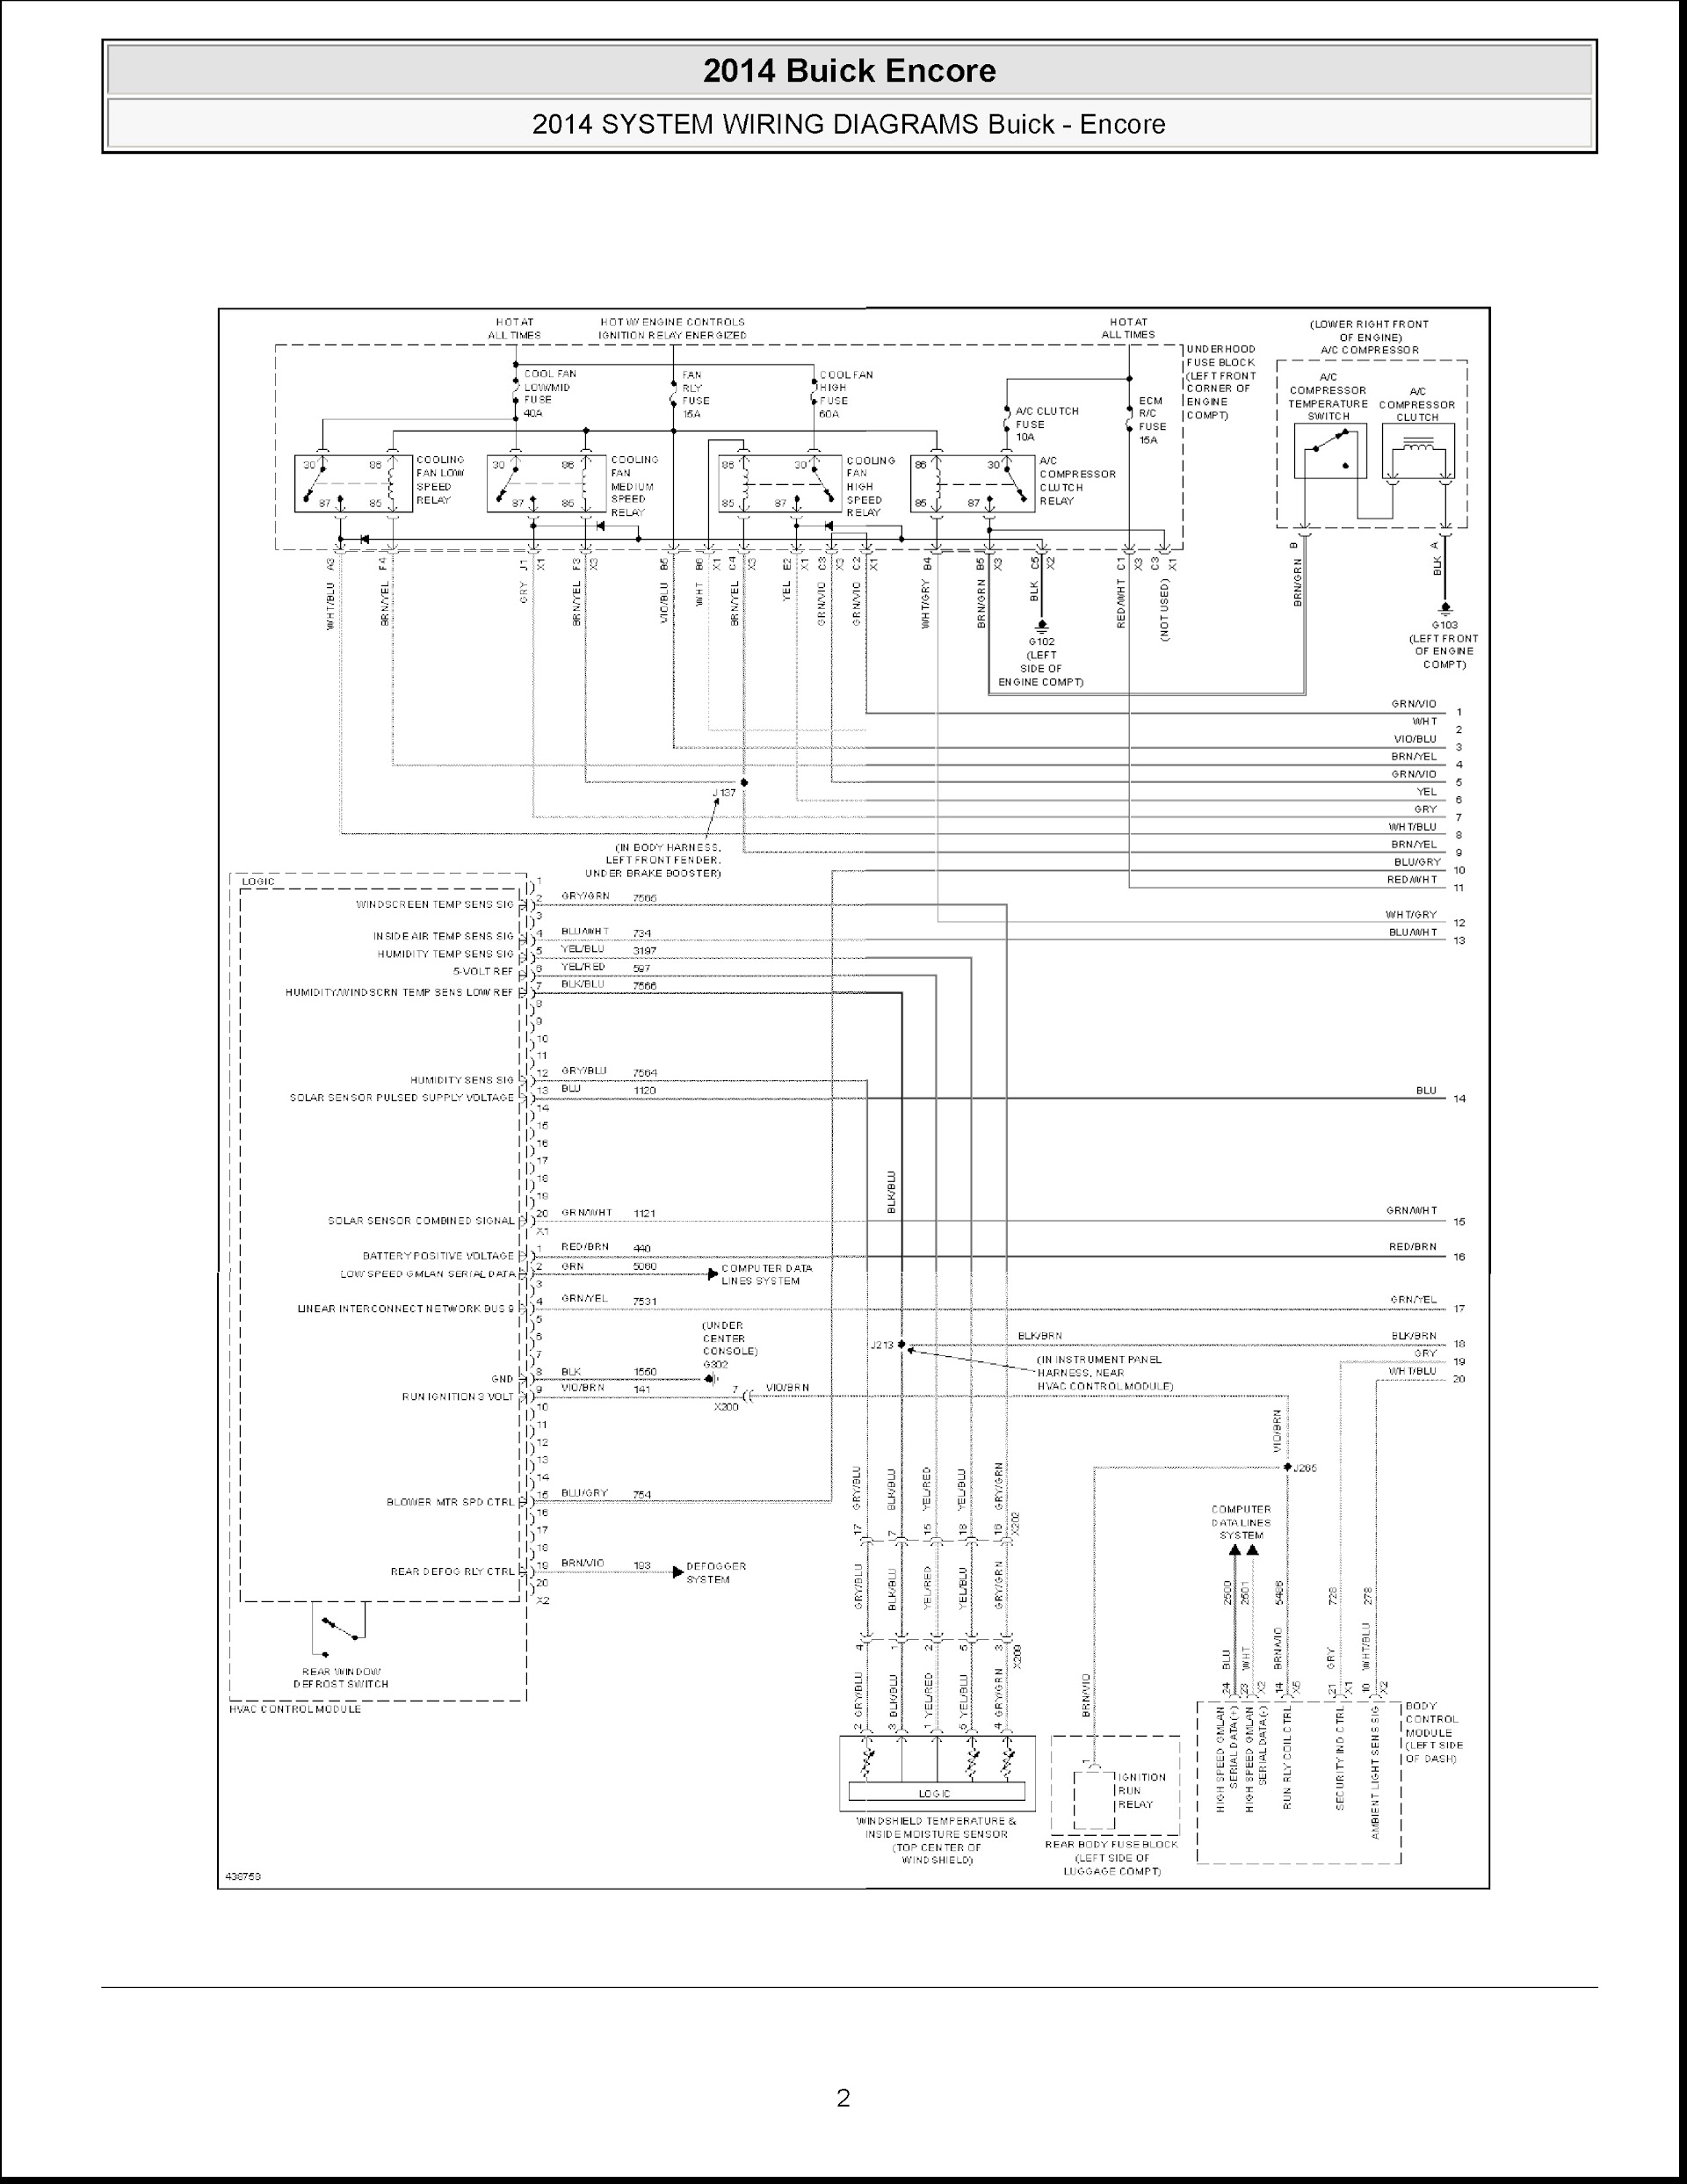 2014 Buick Encore Repair Manual Wiring Diagrams, Wiring Harness